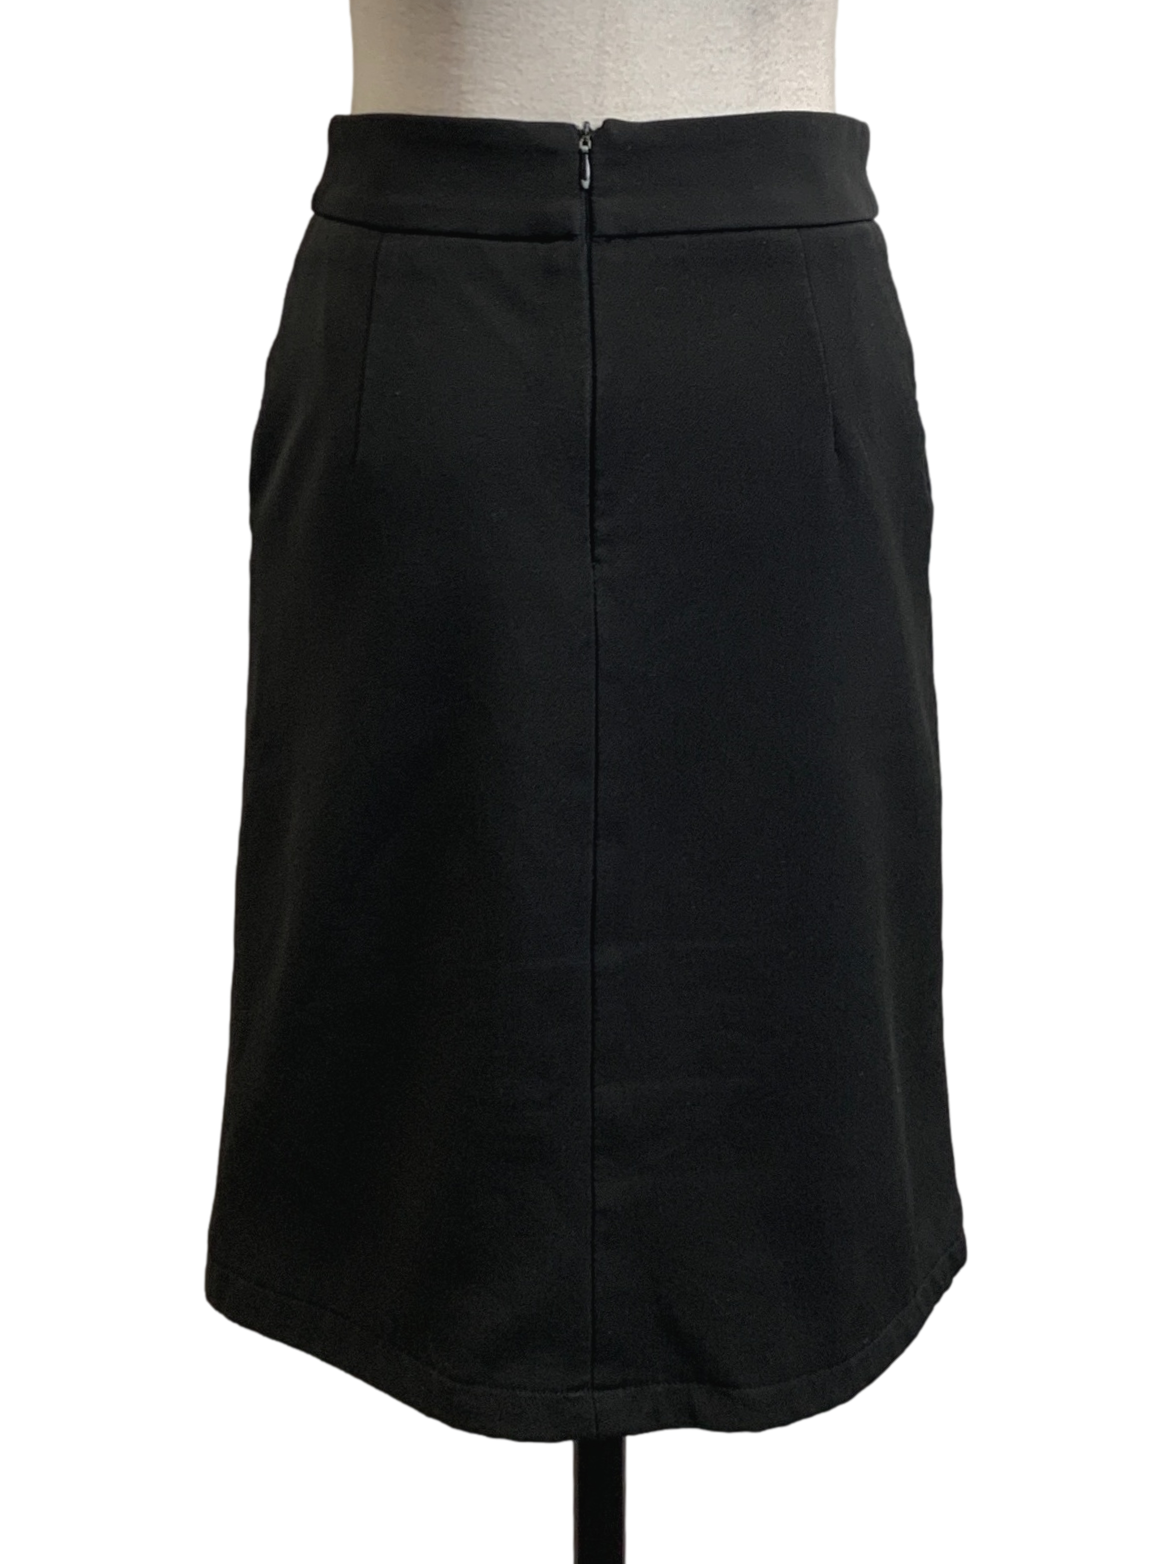 Black Tube Skirt